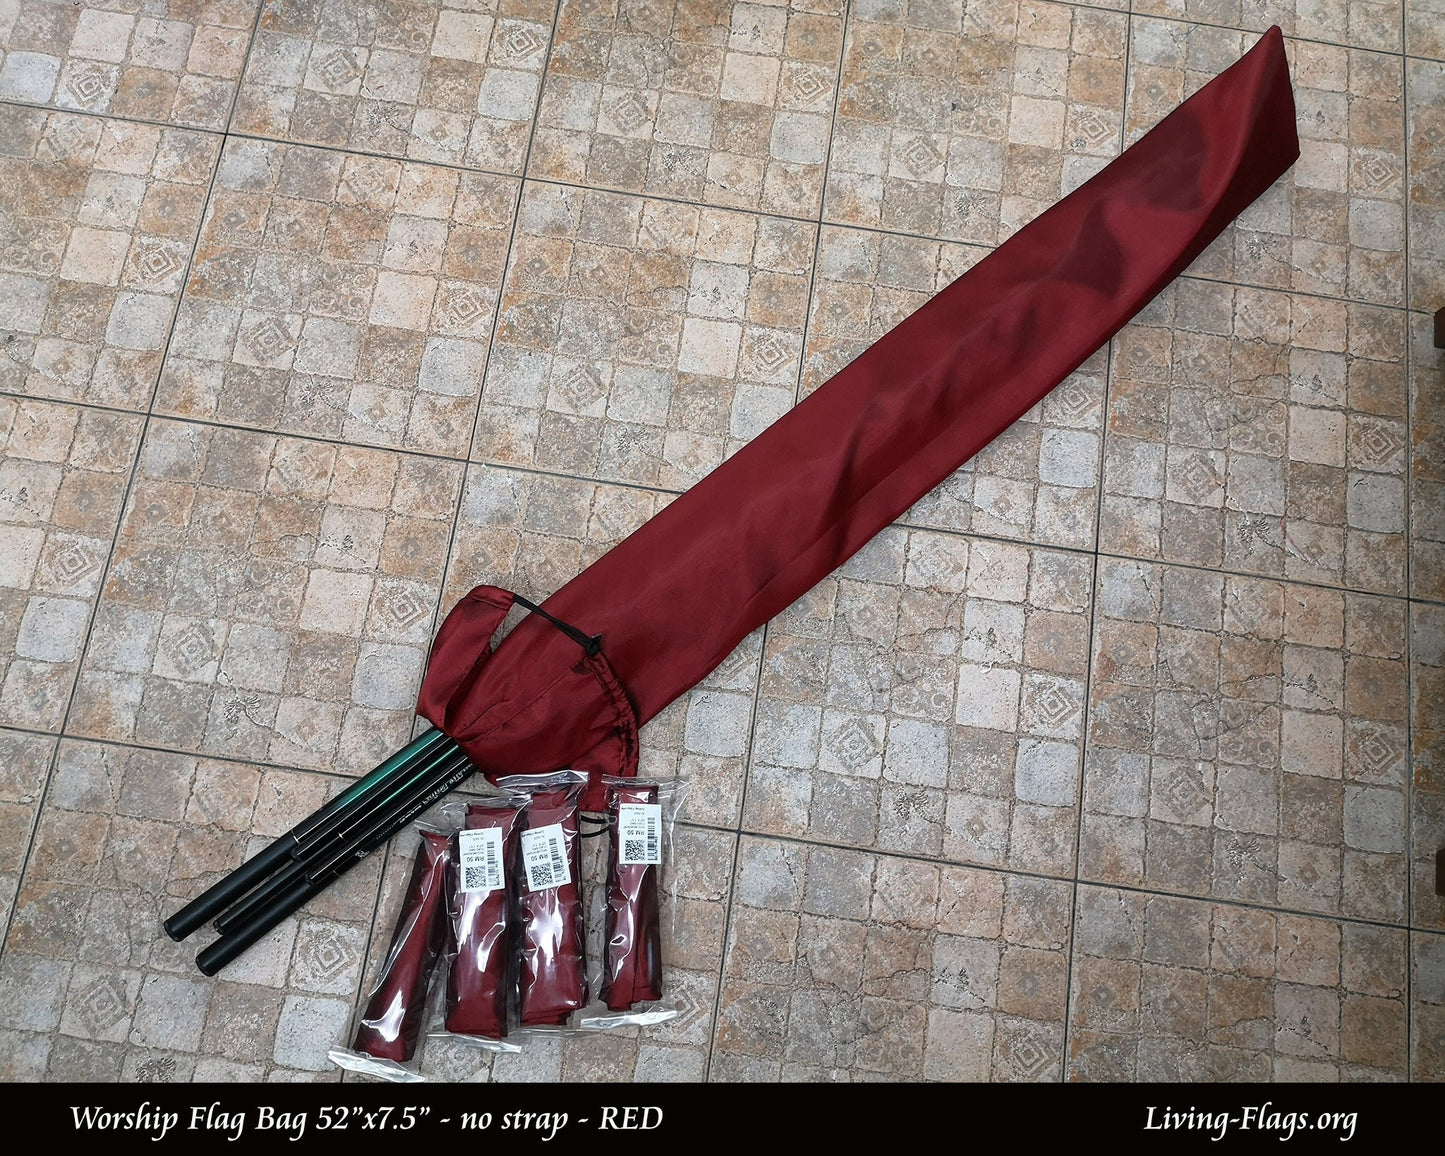 Beg Bendera Penyembahan 52"x 7.5" - Reka Bentuk Merah - Saiz L